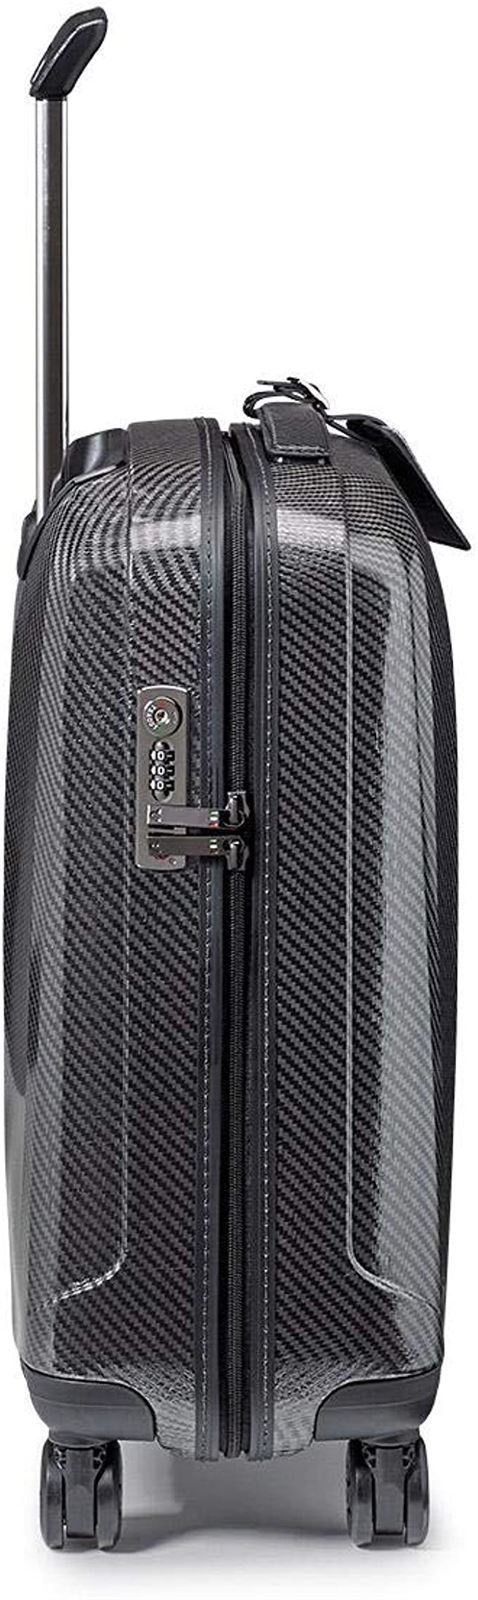 Roncato maleta de cabina Weare Glam color Antracita material EC Matrix muy Resistente 55x40x20 capacidad 40 litros 10 años de Garantia - Imagen 3